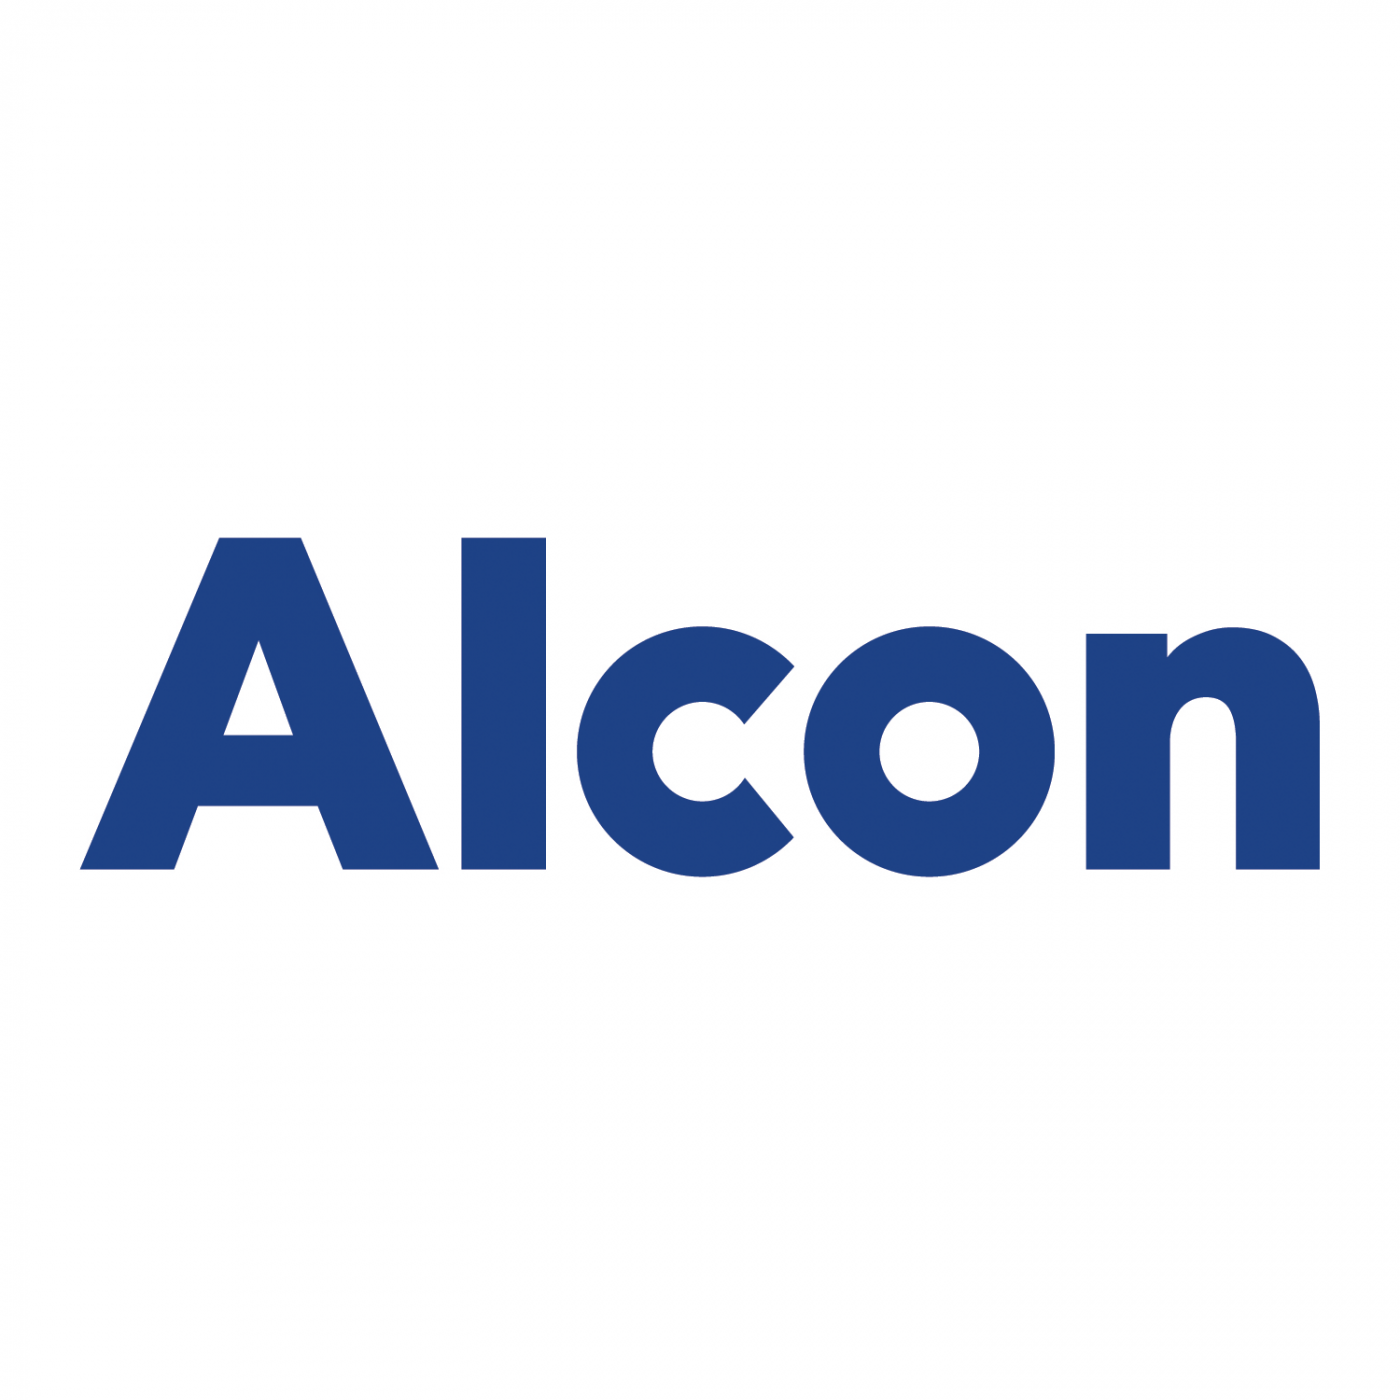 Alcon-logo-2.png